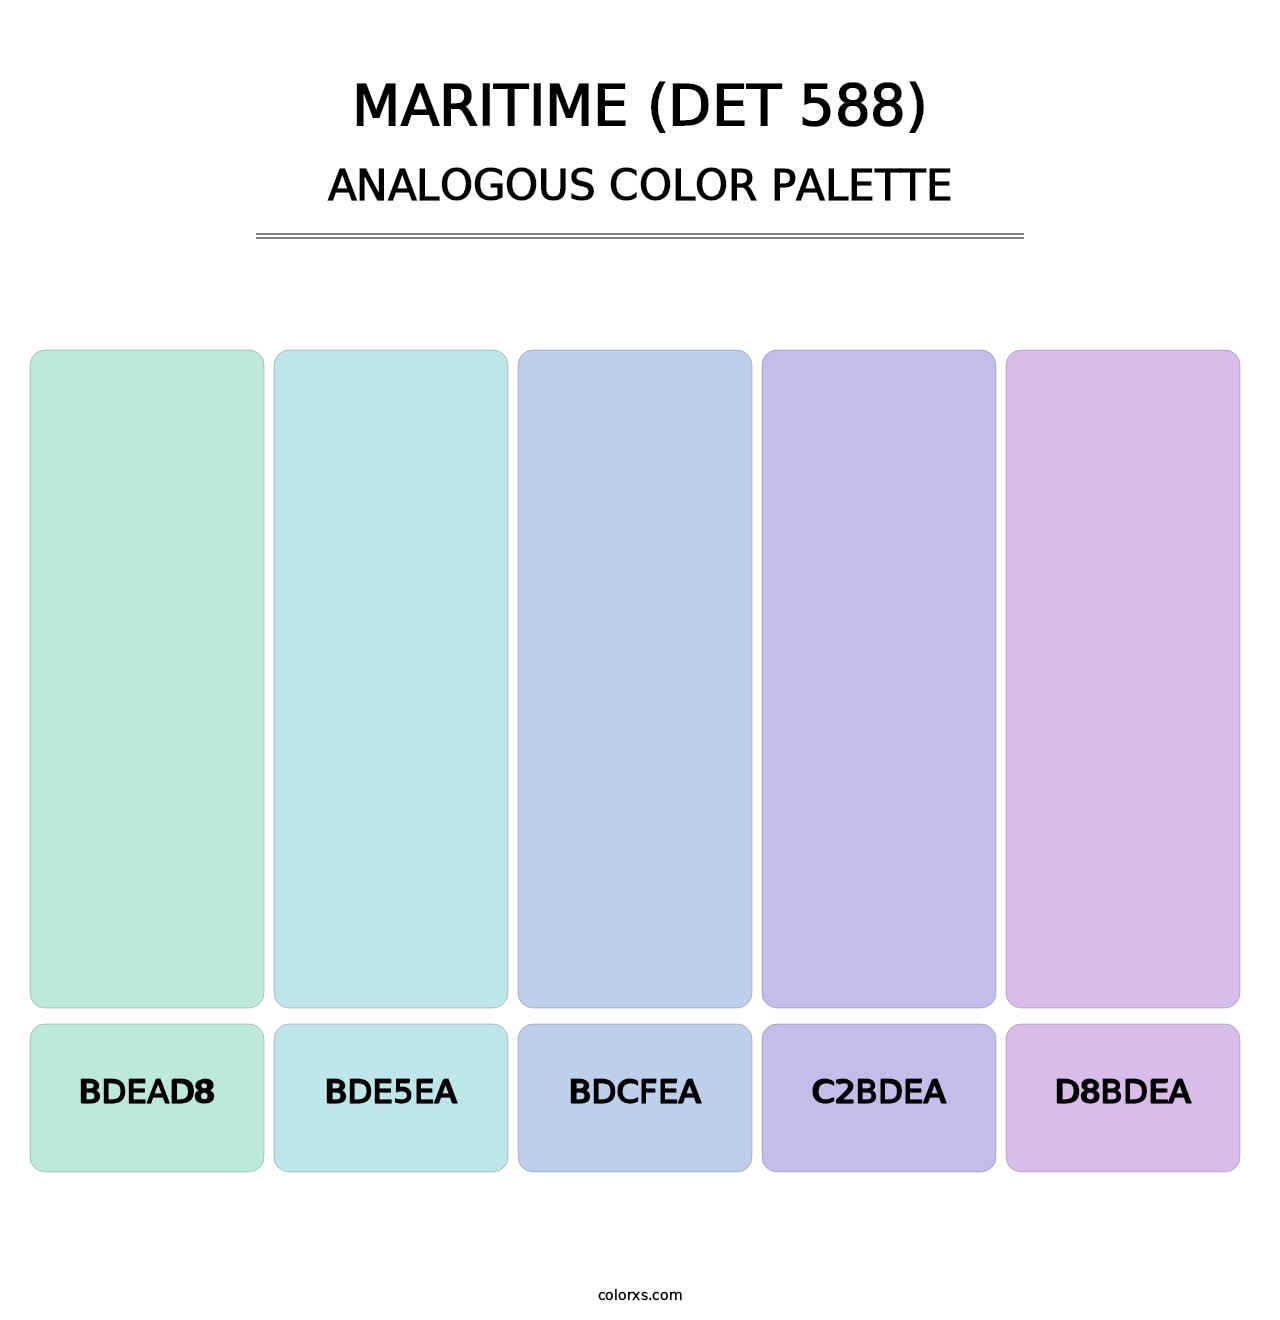 Maritime (DET 588) - Analogous Color Palette